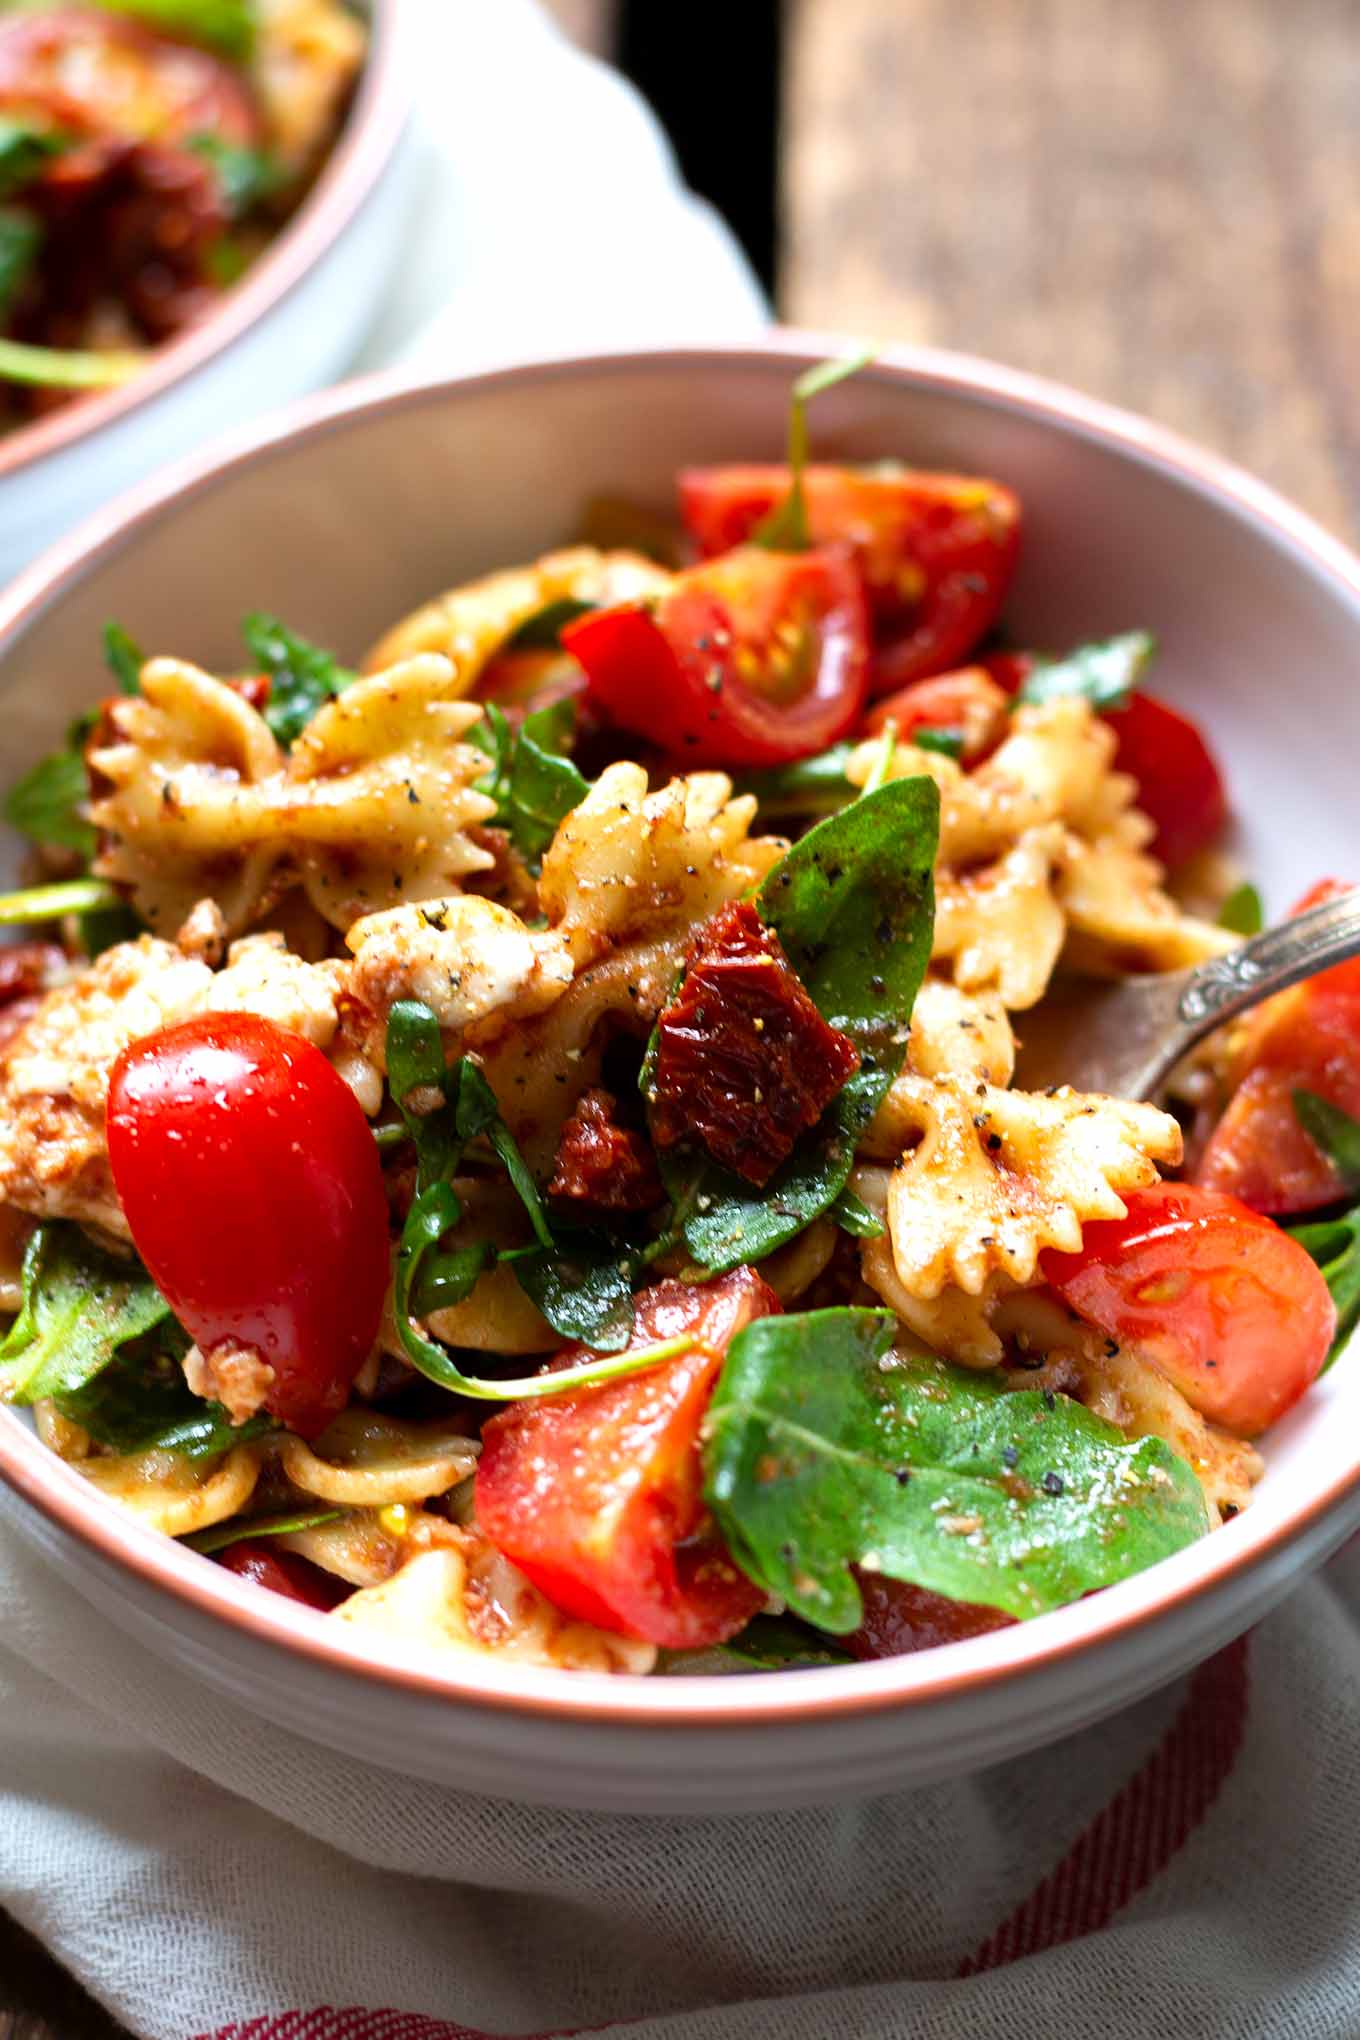 Einfacher italienischer Nudelsalat mit Rucola, getrockneten Tomaten und Mozzarella. Dieses 20-Minuten Rezept ist schnell und immer als erstes weg. - Kochkarussell.com #nudelsalat #salat #pasta #rezept #kochkarussell